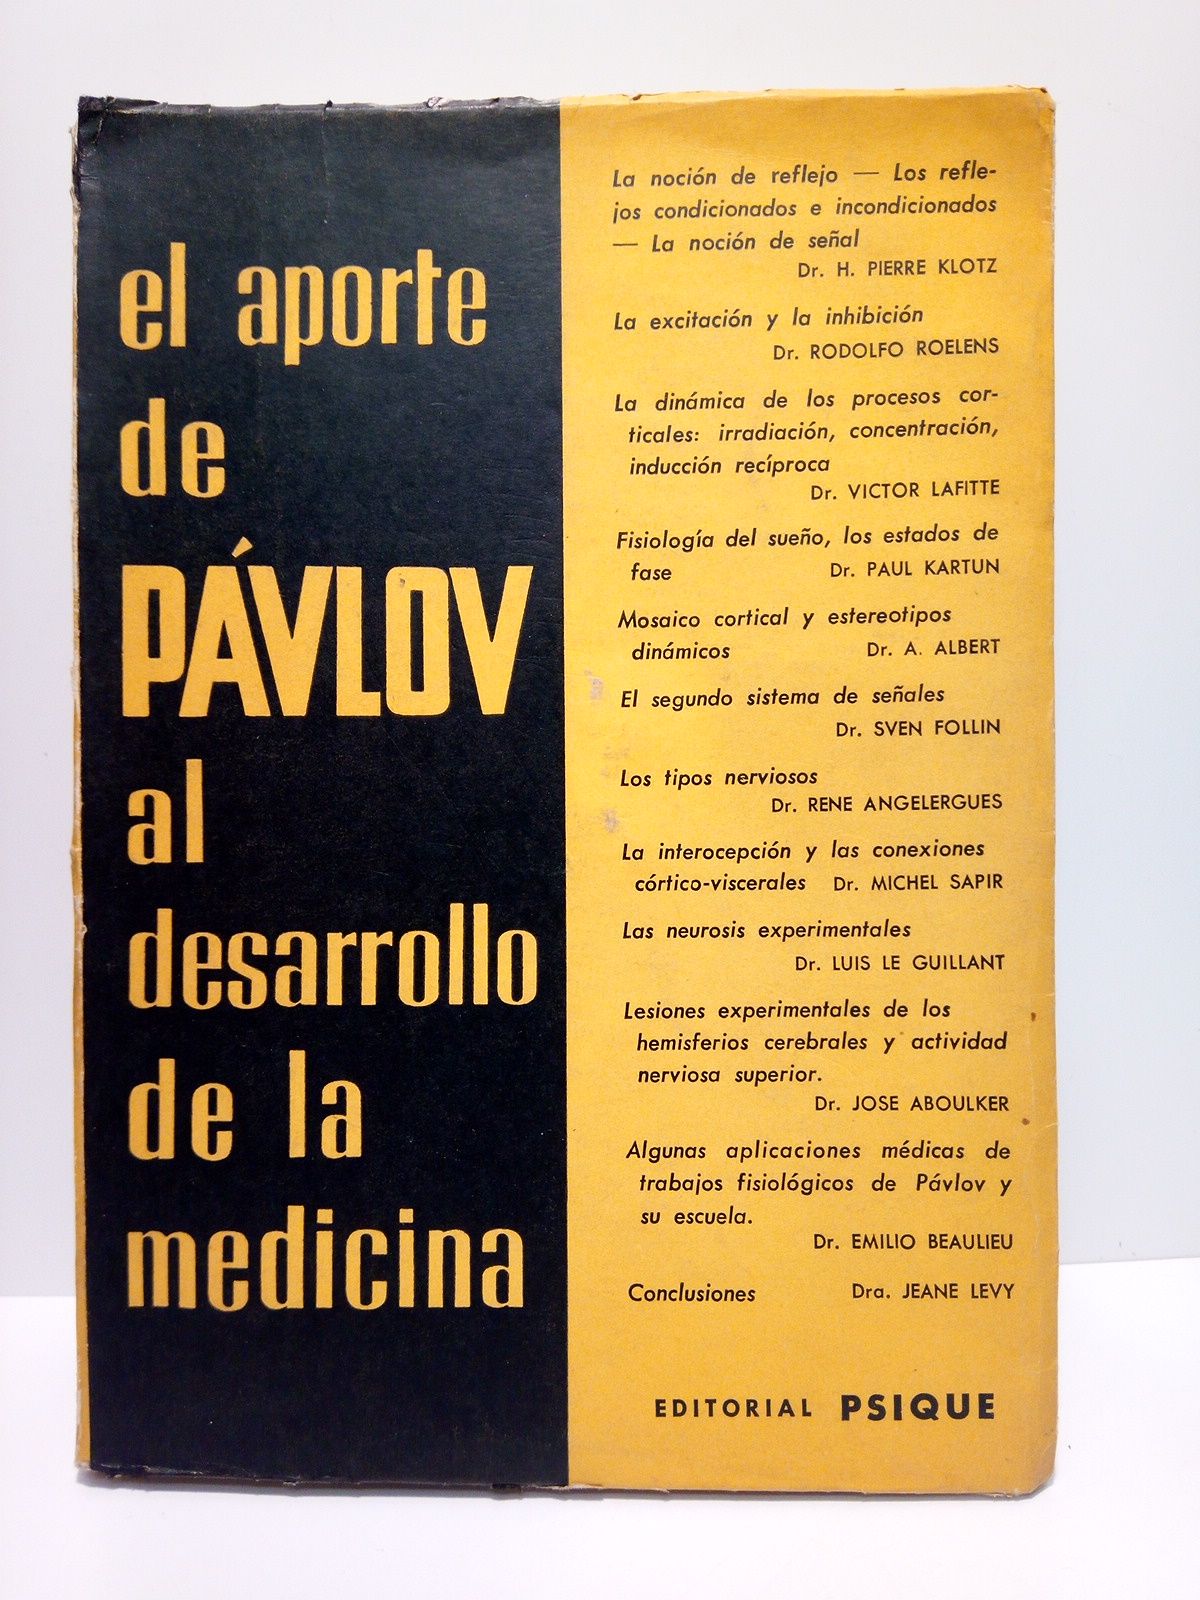 VARIOS - El aporte de PAVLOV al desarrollo de la medicina /  COLABORAN: H. P. Klotz; R. Roelens; V. Lafitte; P. Kartun; A. Albert; S. Follin; R. Angelergues; M. Sapir; L. Le Guillant; J. Aboulker; E. Beaulieu; J. Lvy